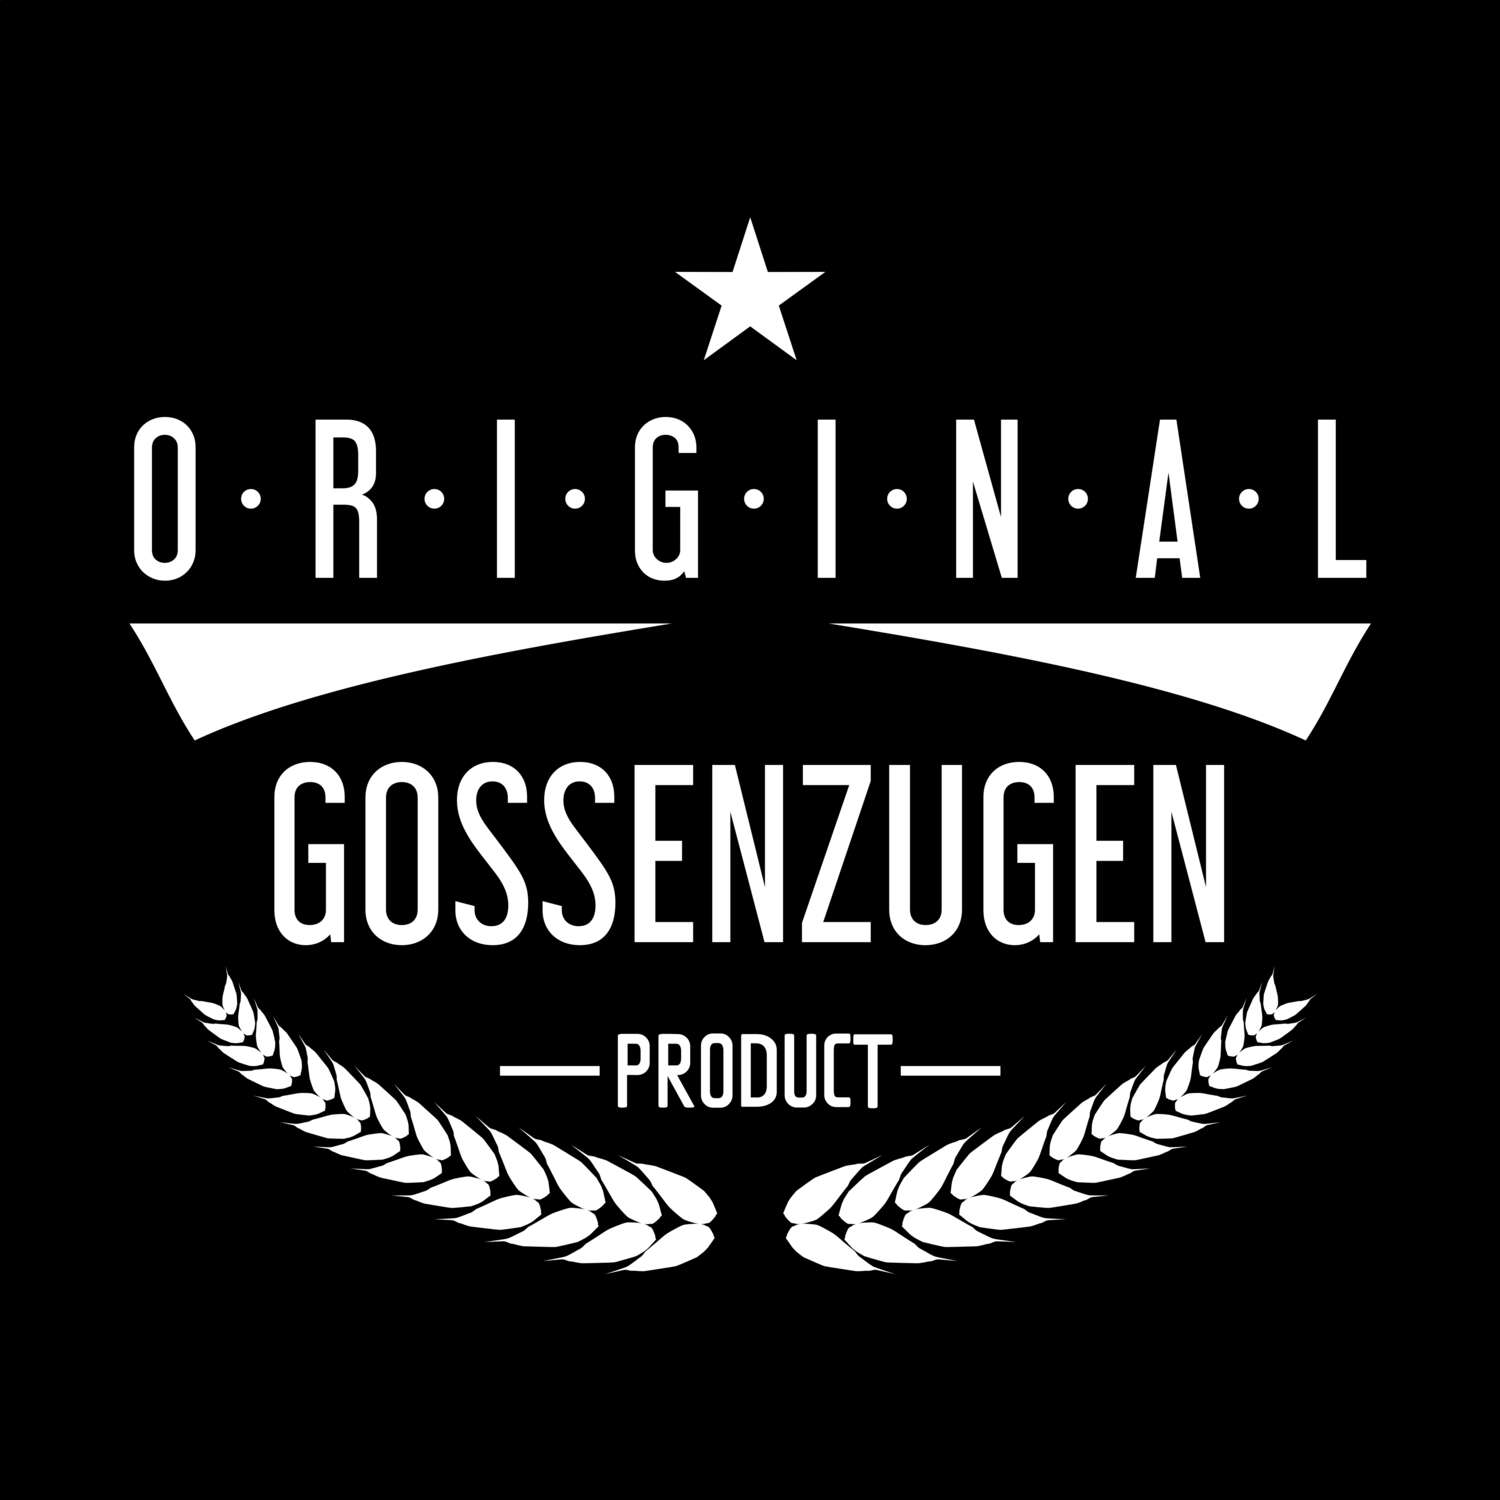 Gossenzugen T-Shirt »Original Product«